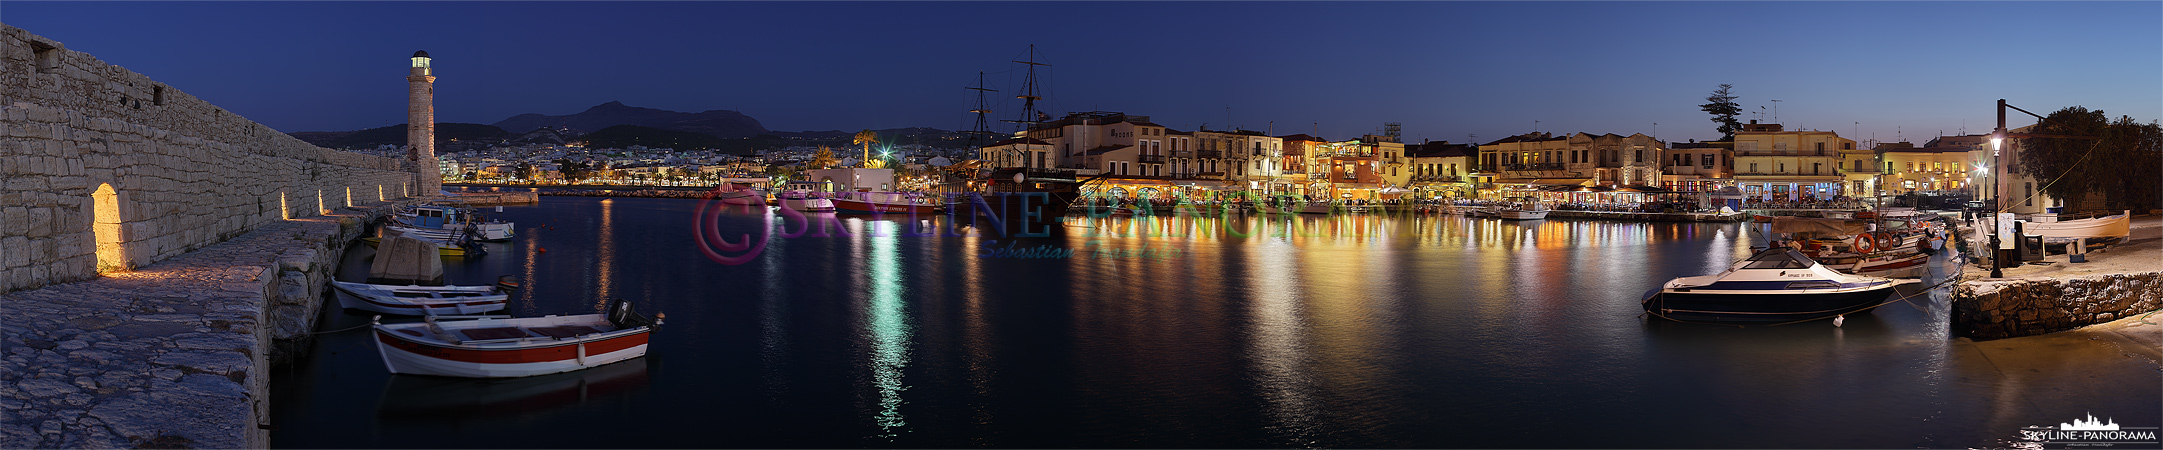 Kreta – Hafen Rethymnon (p_00416)